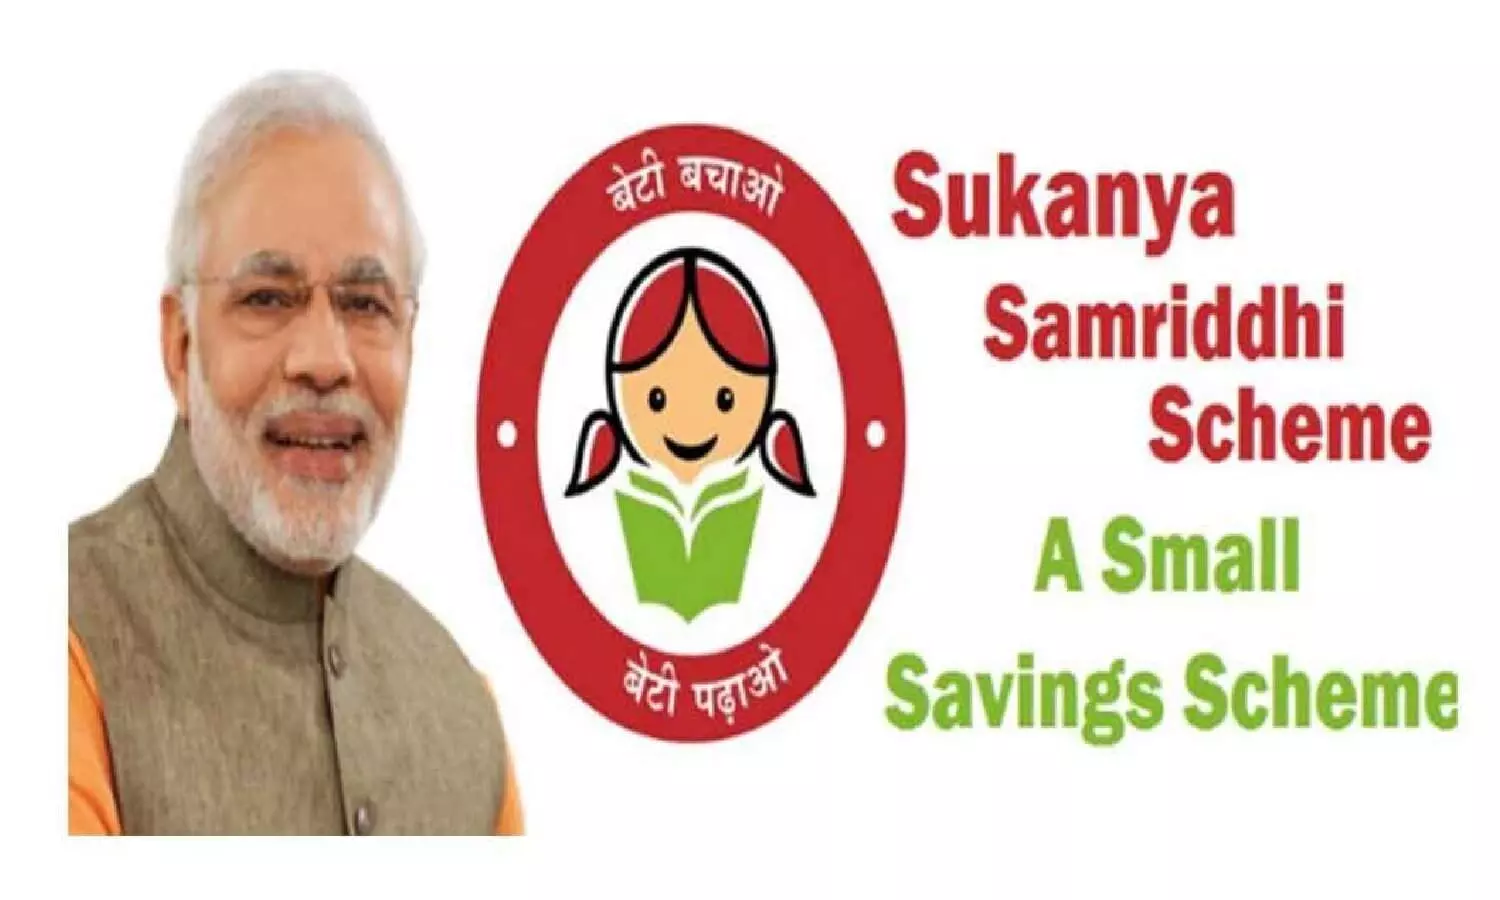 Sukanya Samriddhi Yojana: बेटी के लिए आज ही खुलवाएं सुकन्या समृद्धि योजना में खाता जानें प्रोसेस